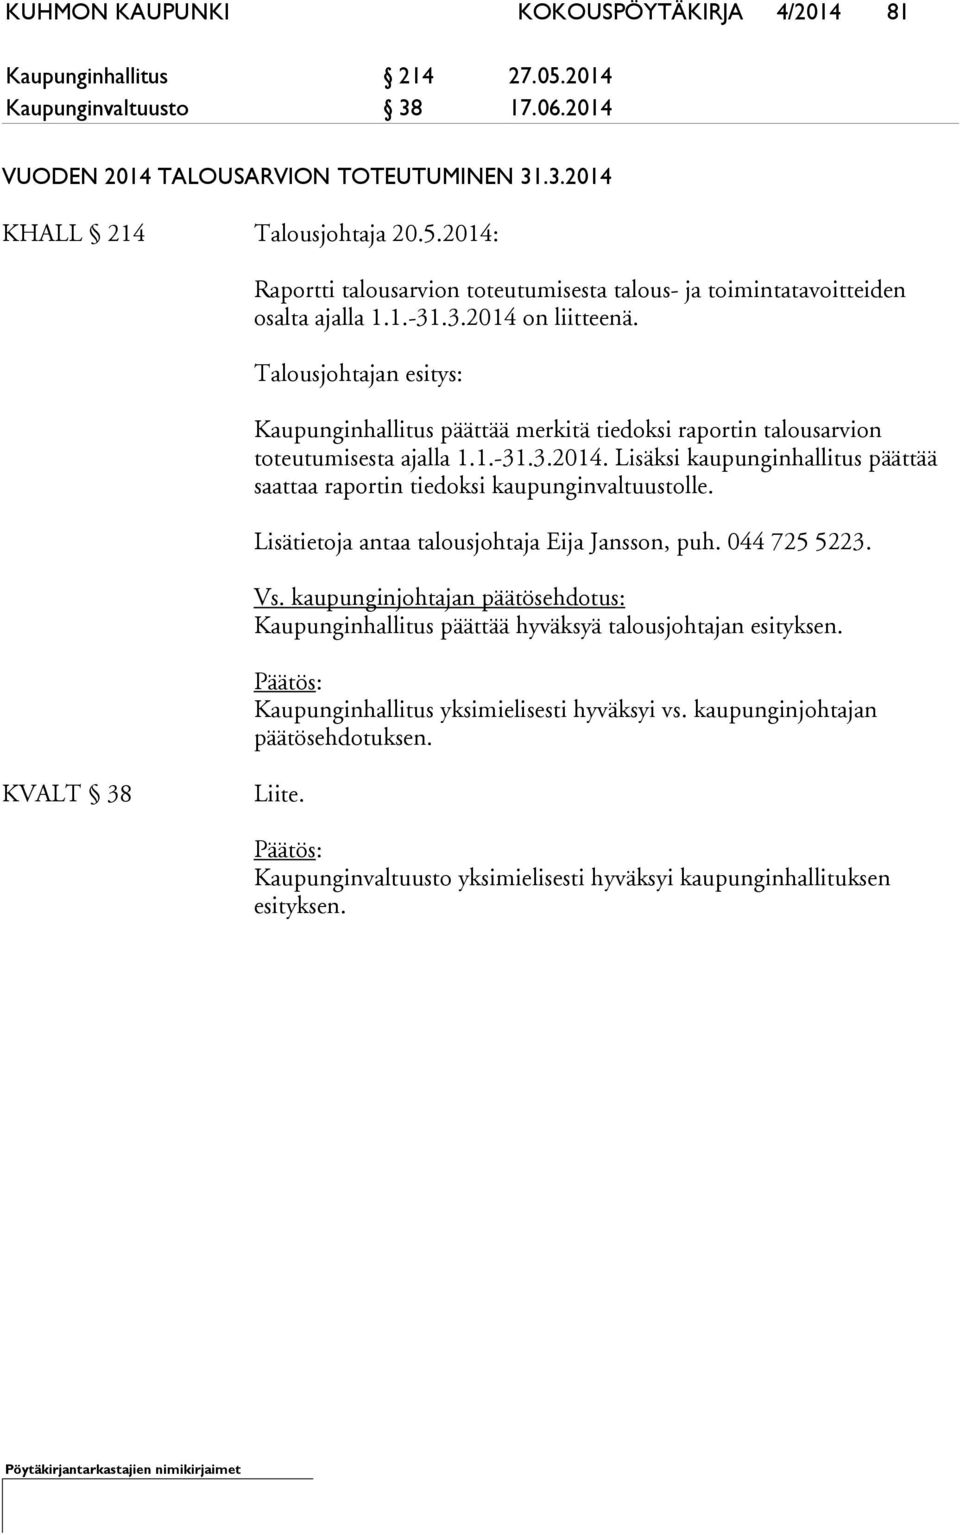 Lisätietoja antaa talousjohtaja Eija Jansson, puh. 044 725 5223. Vs. kaupunginjohtajan päätösehdotus: Kaupunginhallitus päättää hyväksyä talousjohtajan esityksen.